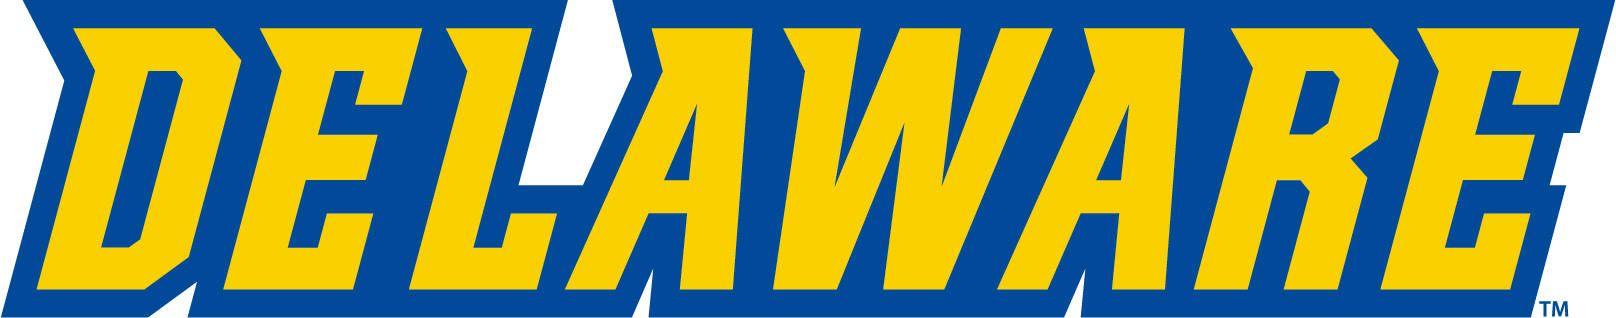 University of Delaware Blue Hens Logo - Logo Usage - University of Delaware Athletics